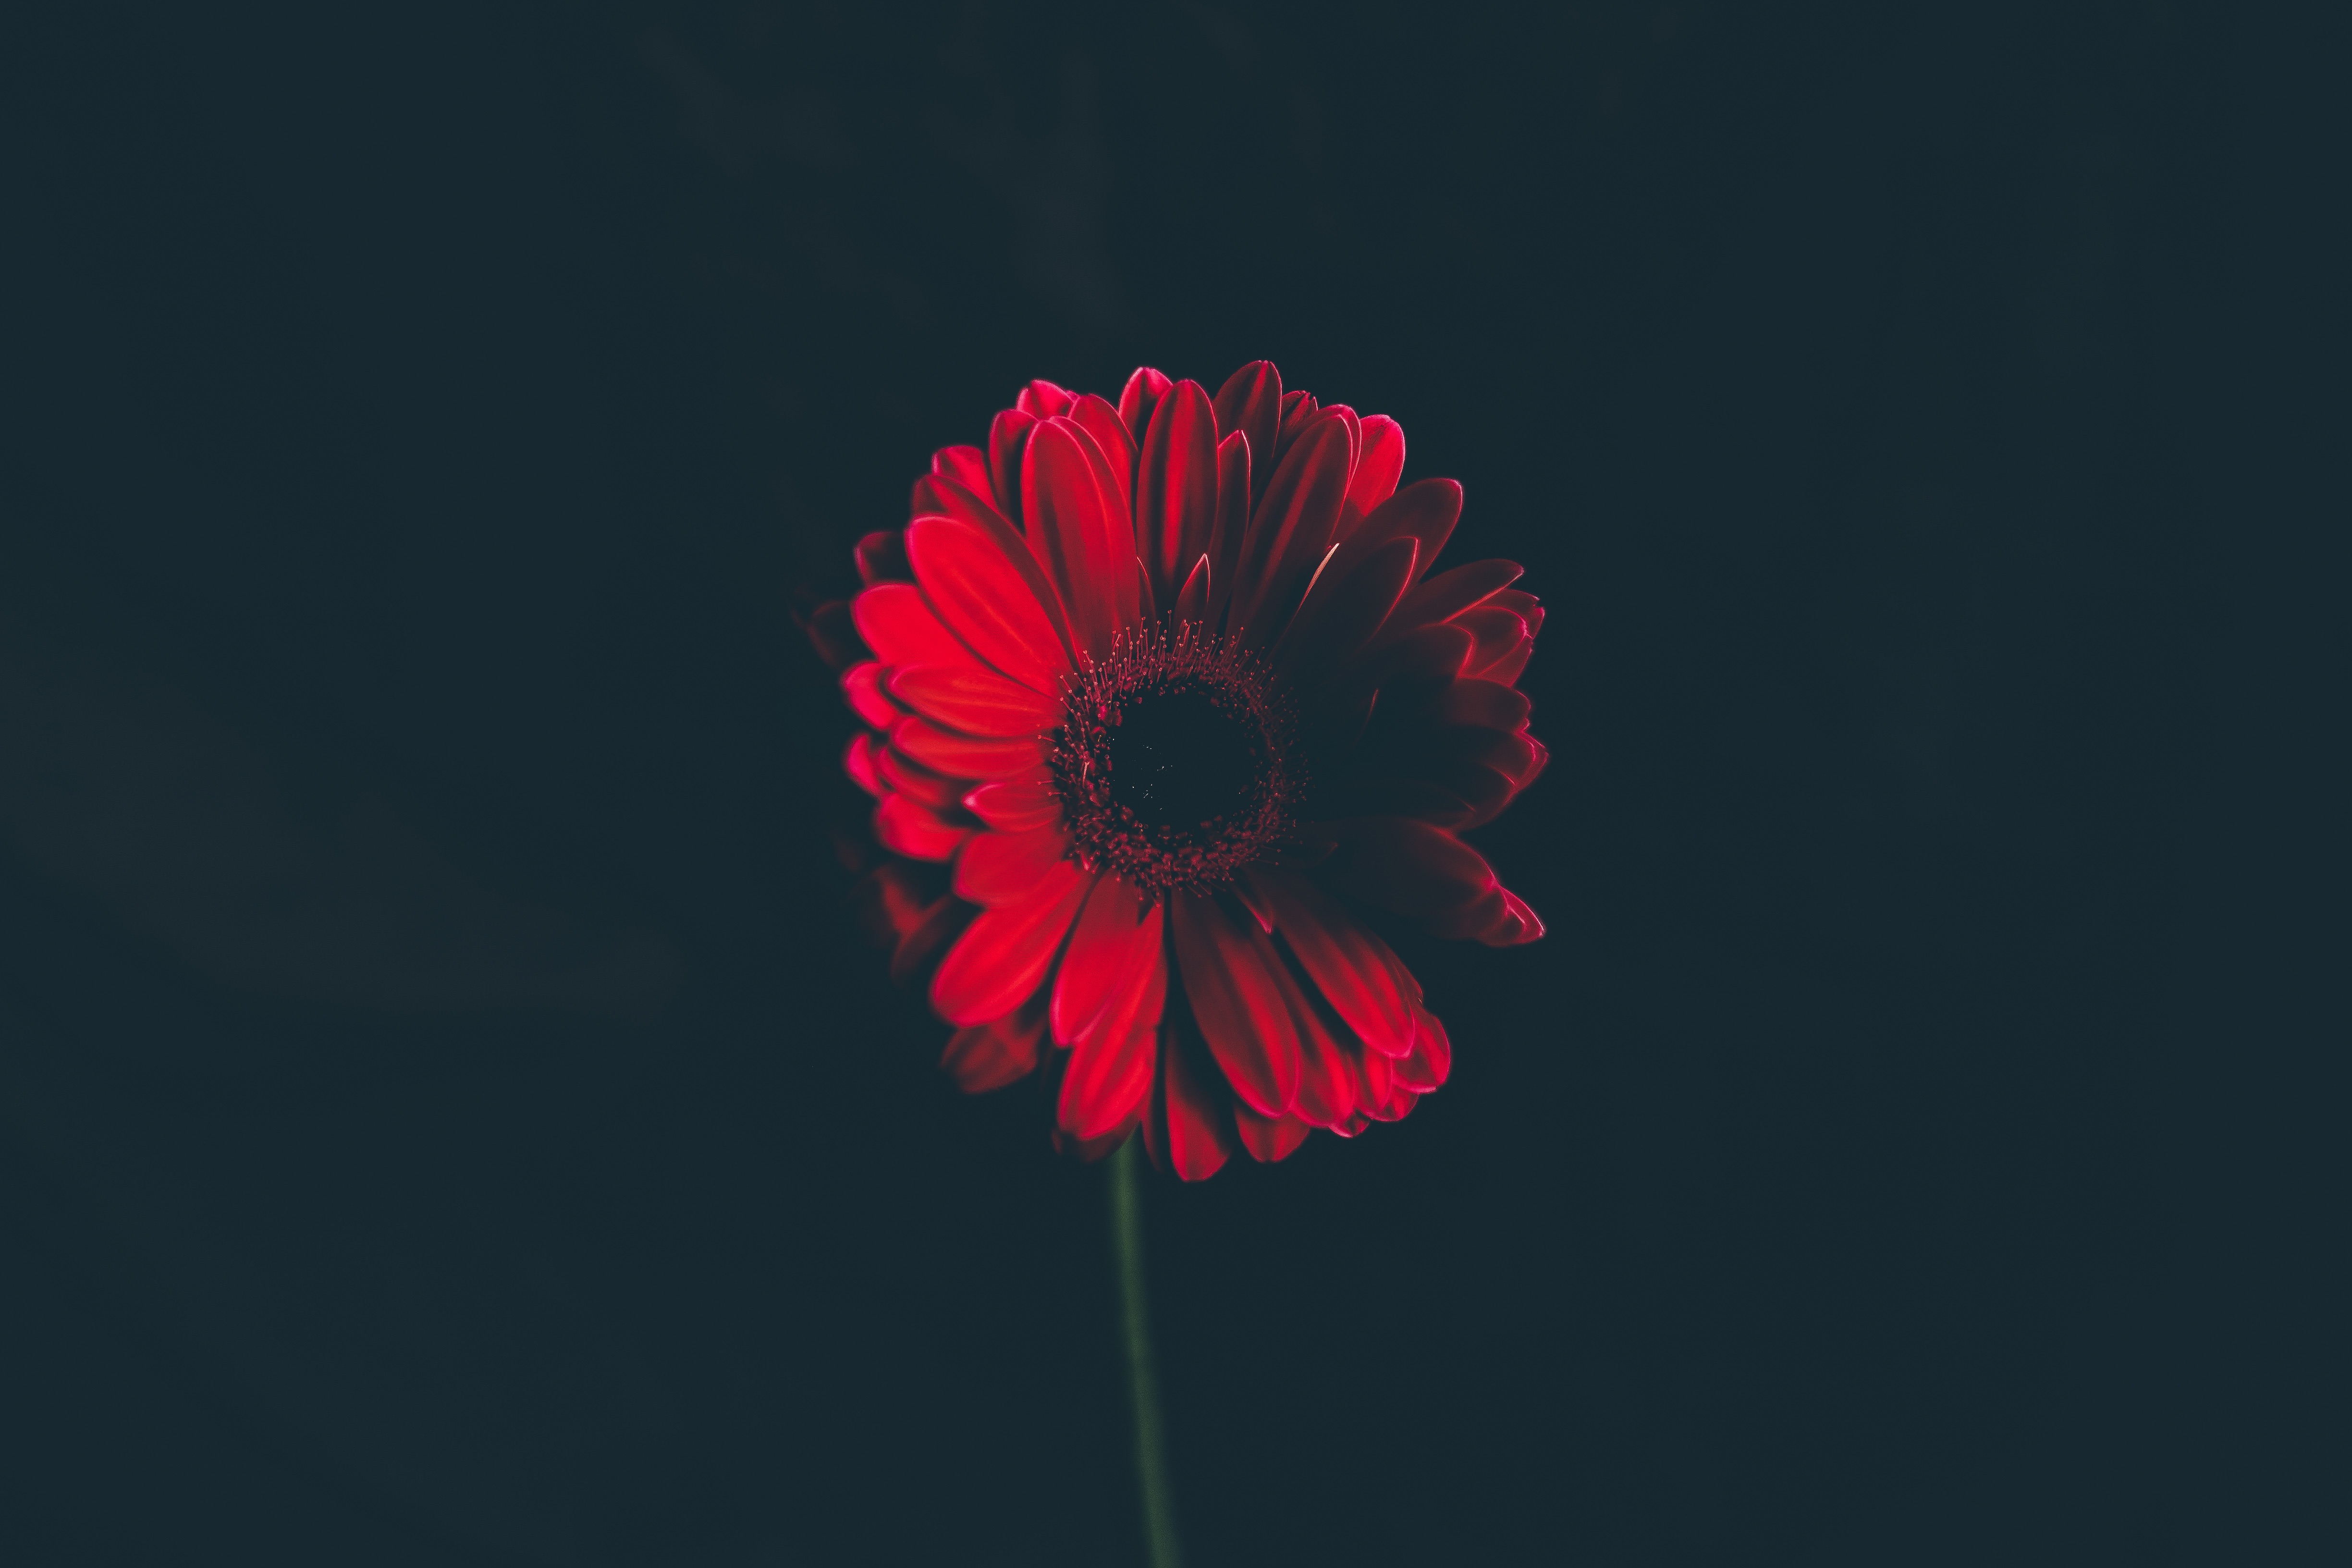 stalk, flower, black background, flowers, bud, red, stem Full HD